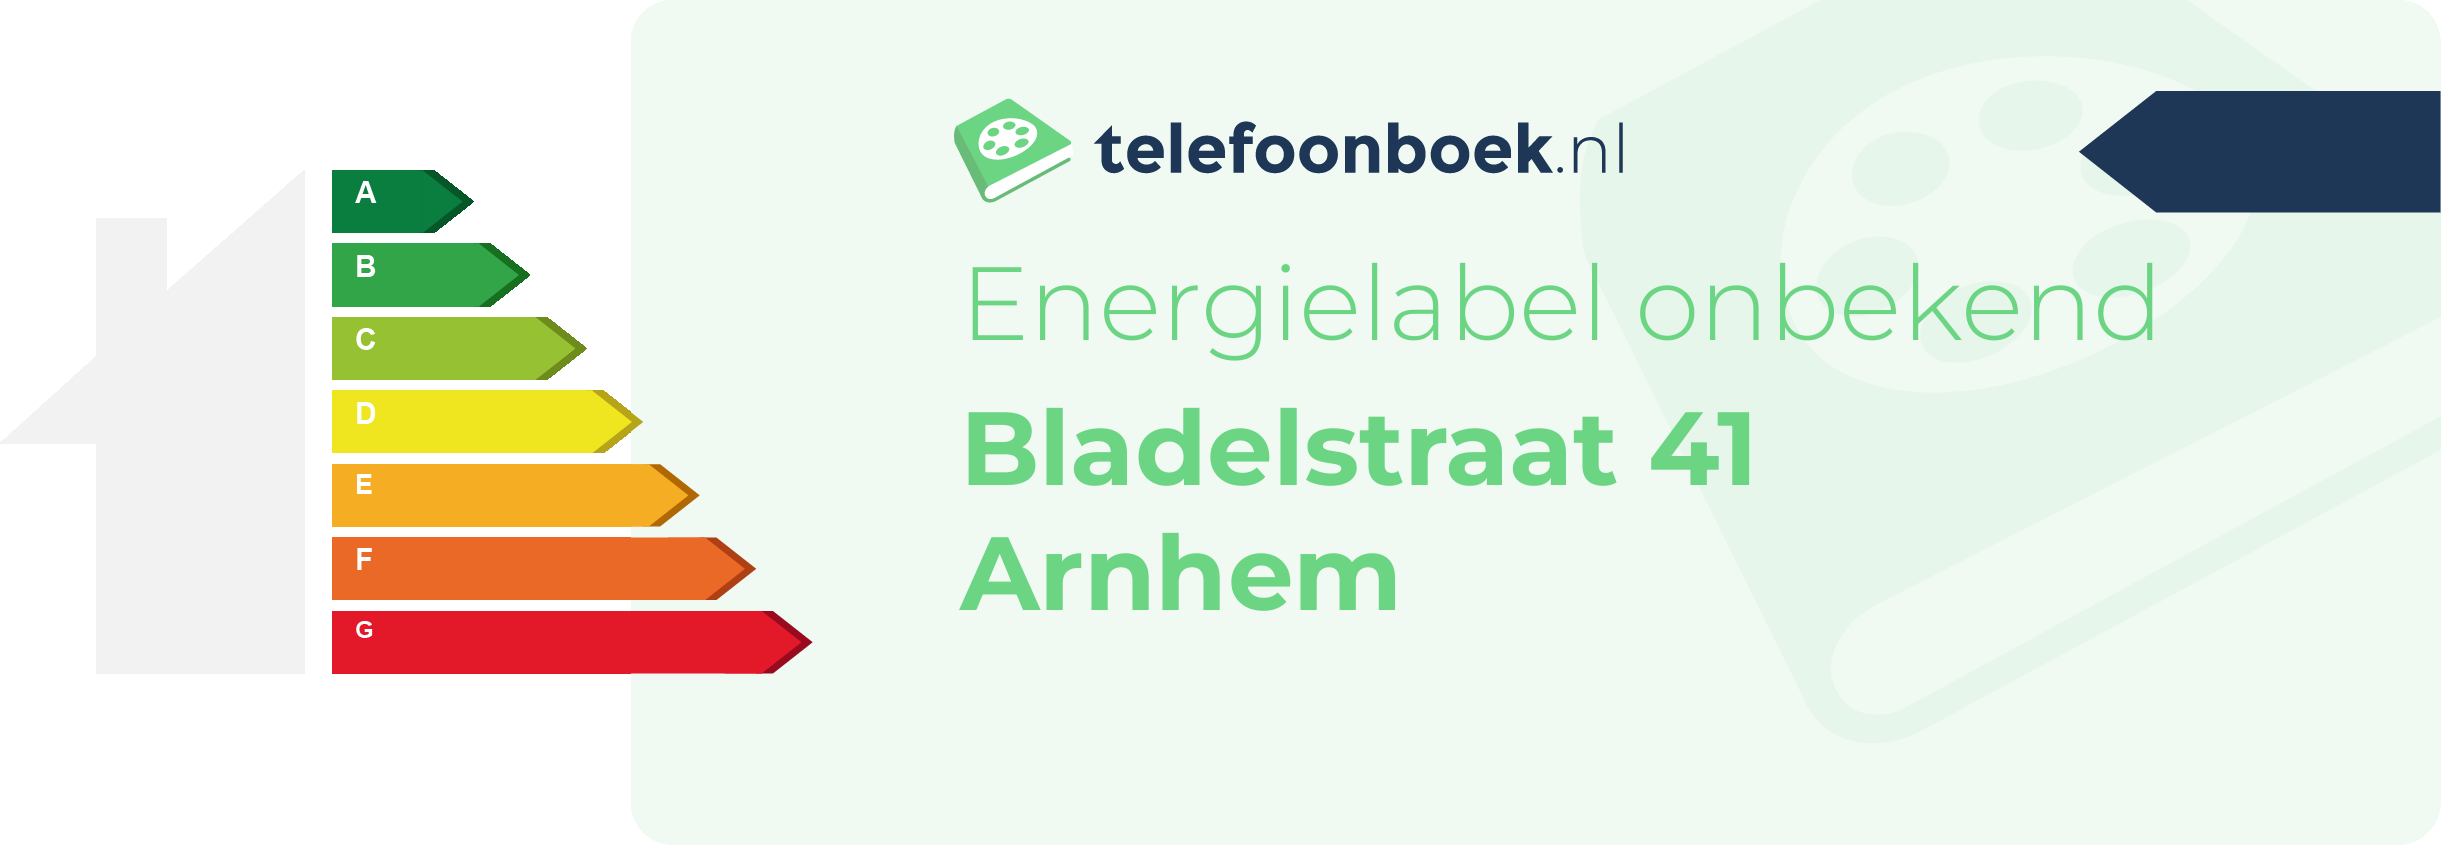 Energielabel Bladelstraat 41 Arnhem